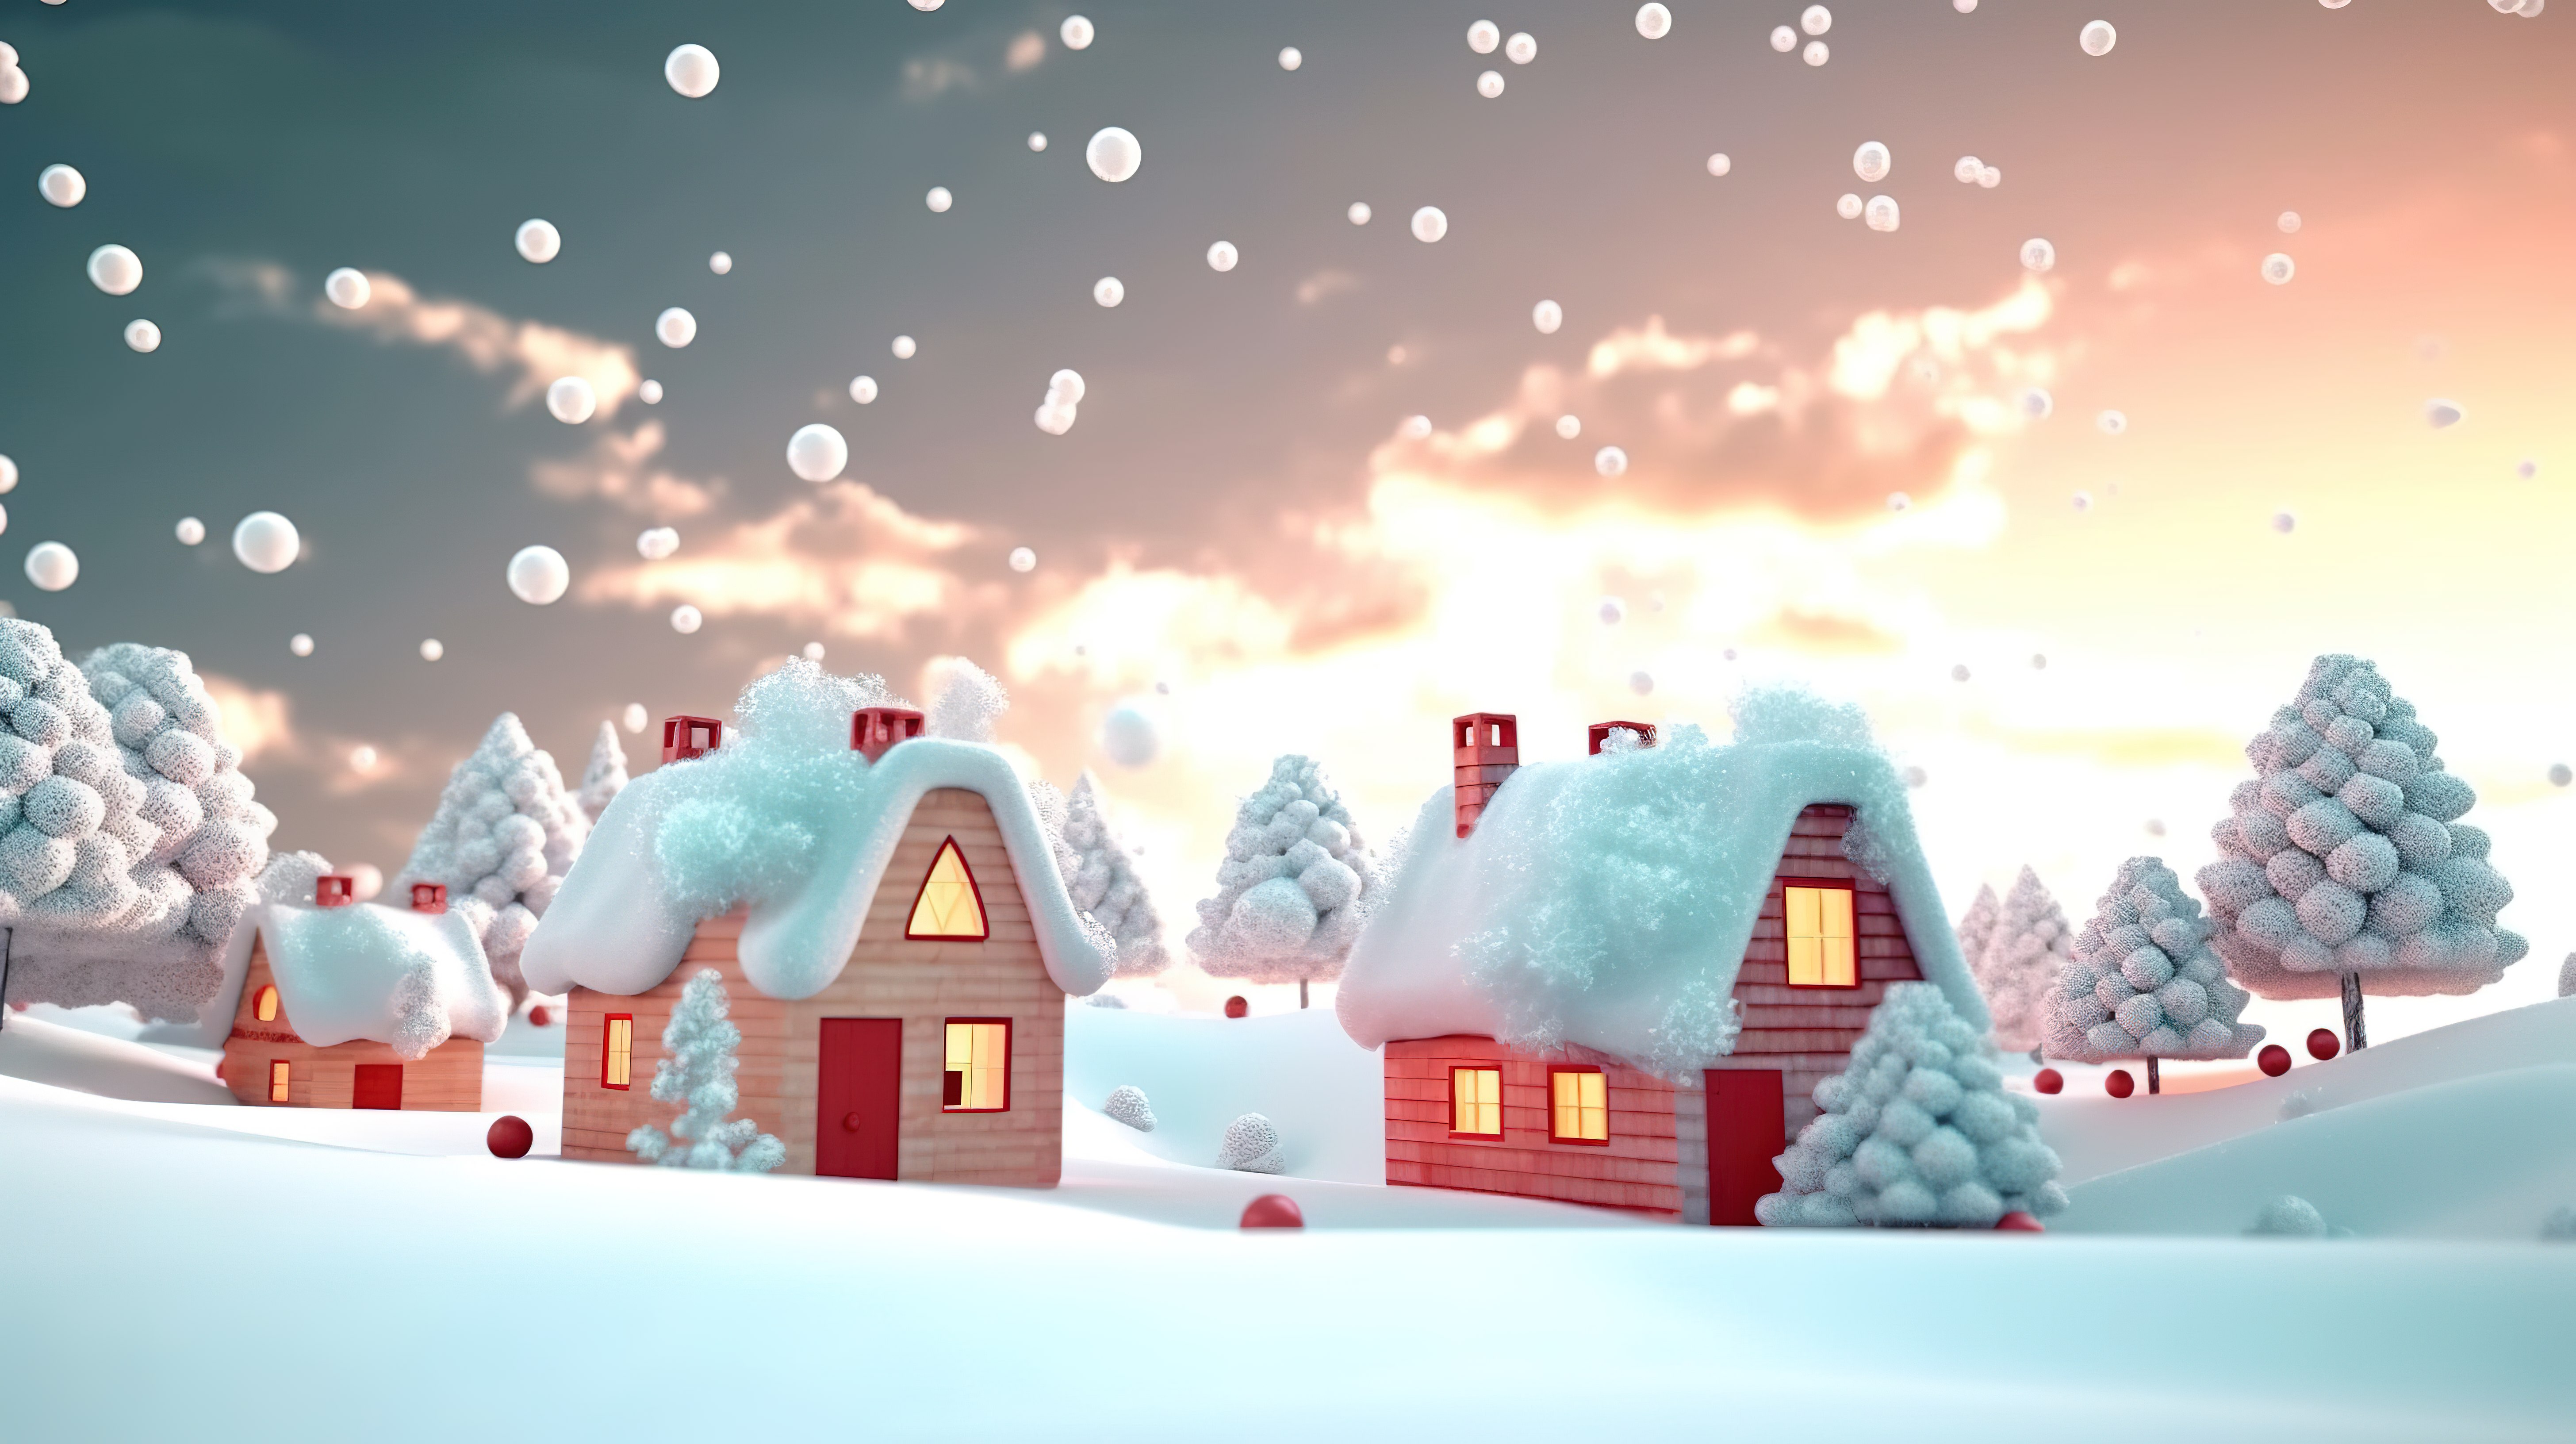 节日圣诞房子和树木的 3d 渲染图片